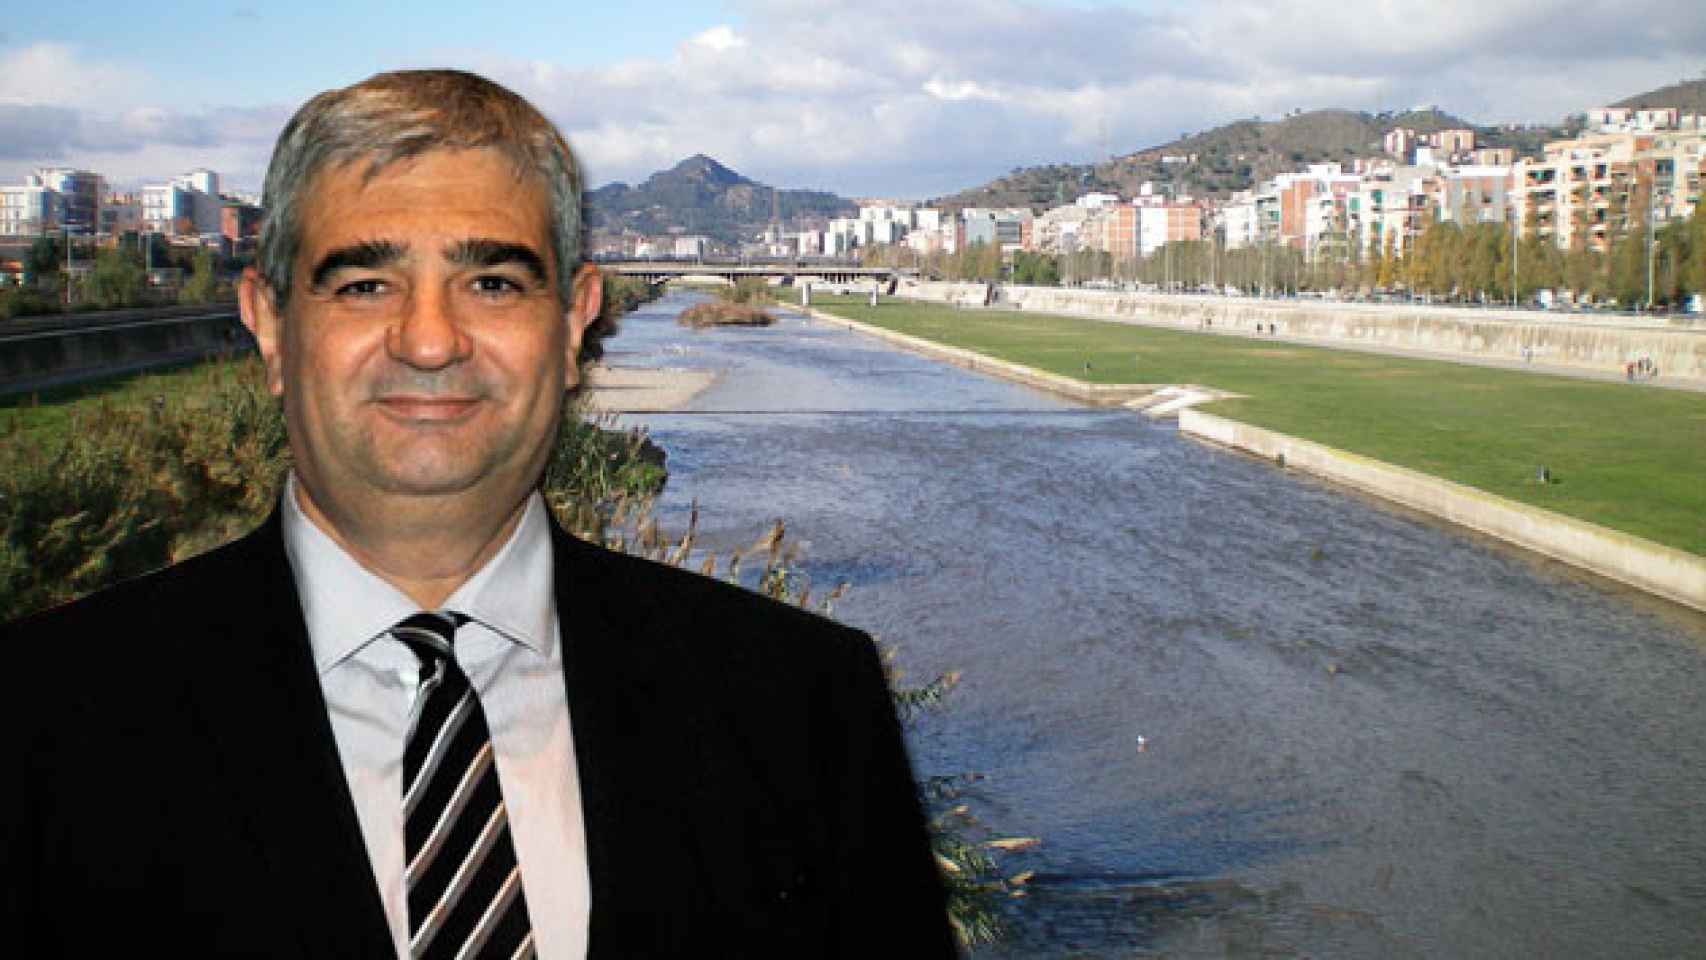 El presidente del Consejo Comarcal del Barcelonés, Francesc Josep Belver, junto al río Besós / FOTOMONTAJE CG